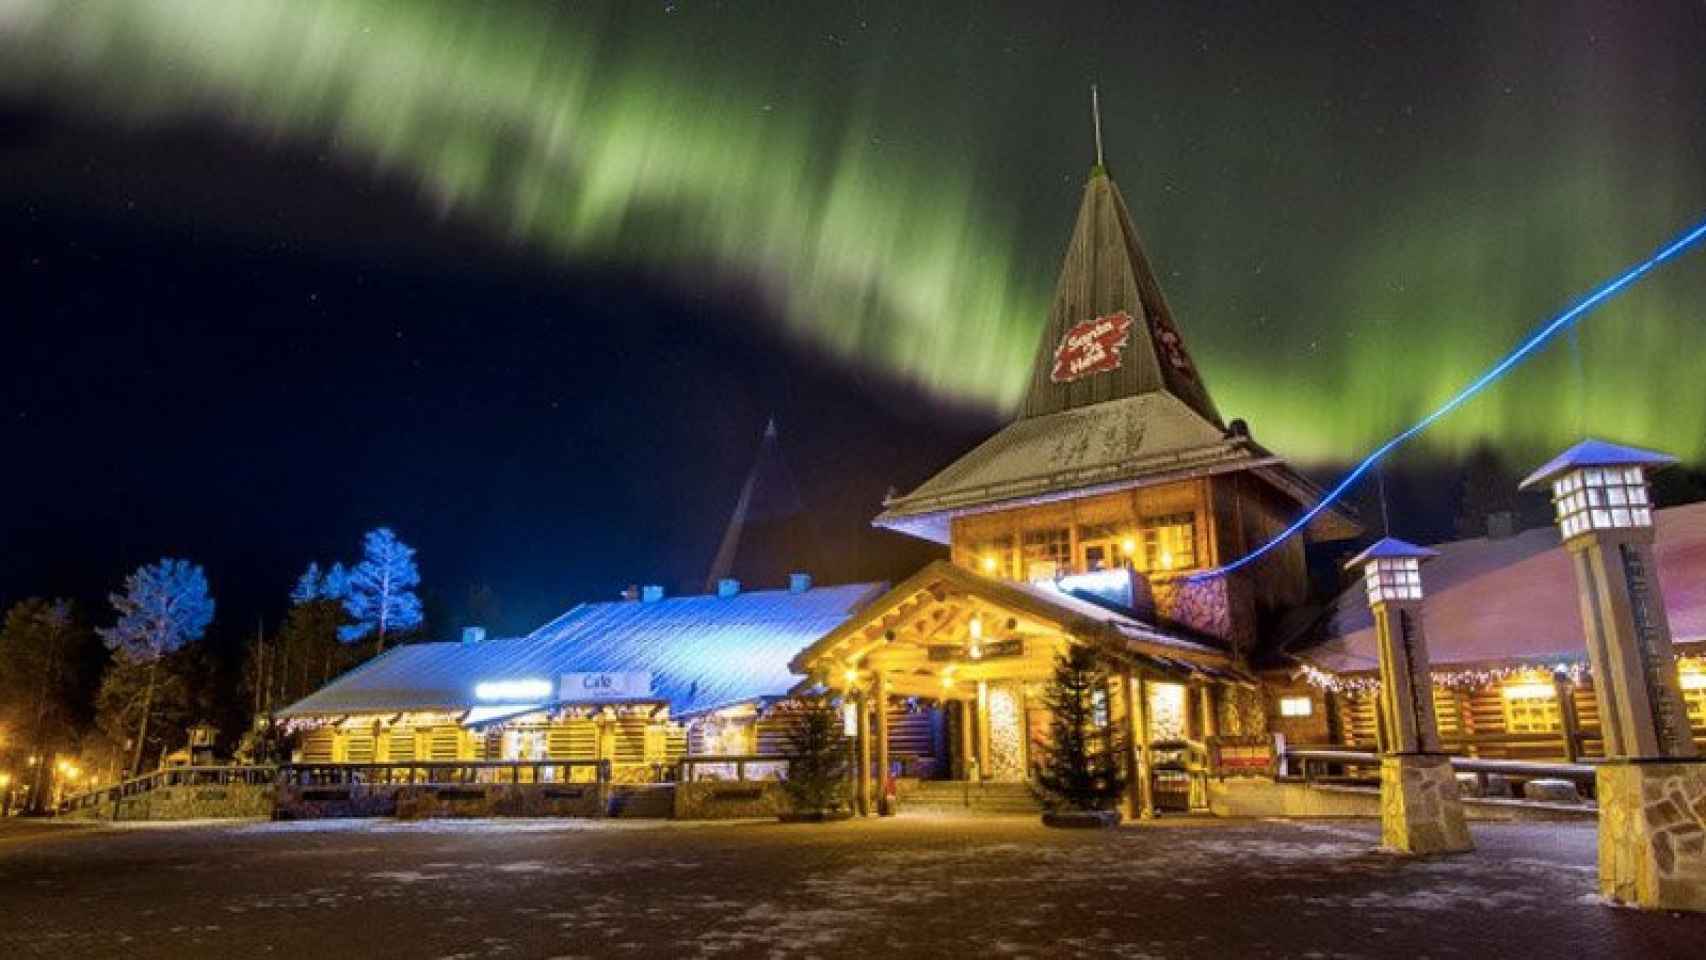 El pueblo de Papá Noel se encuentra en la Laponia finlandesa